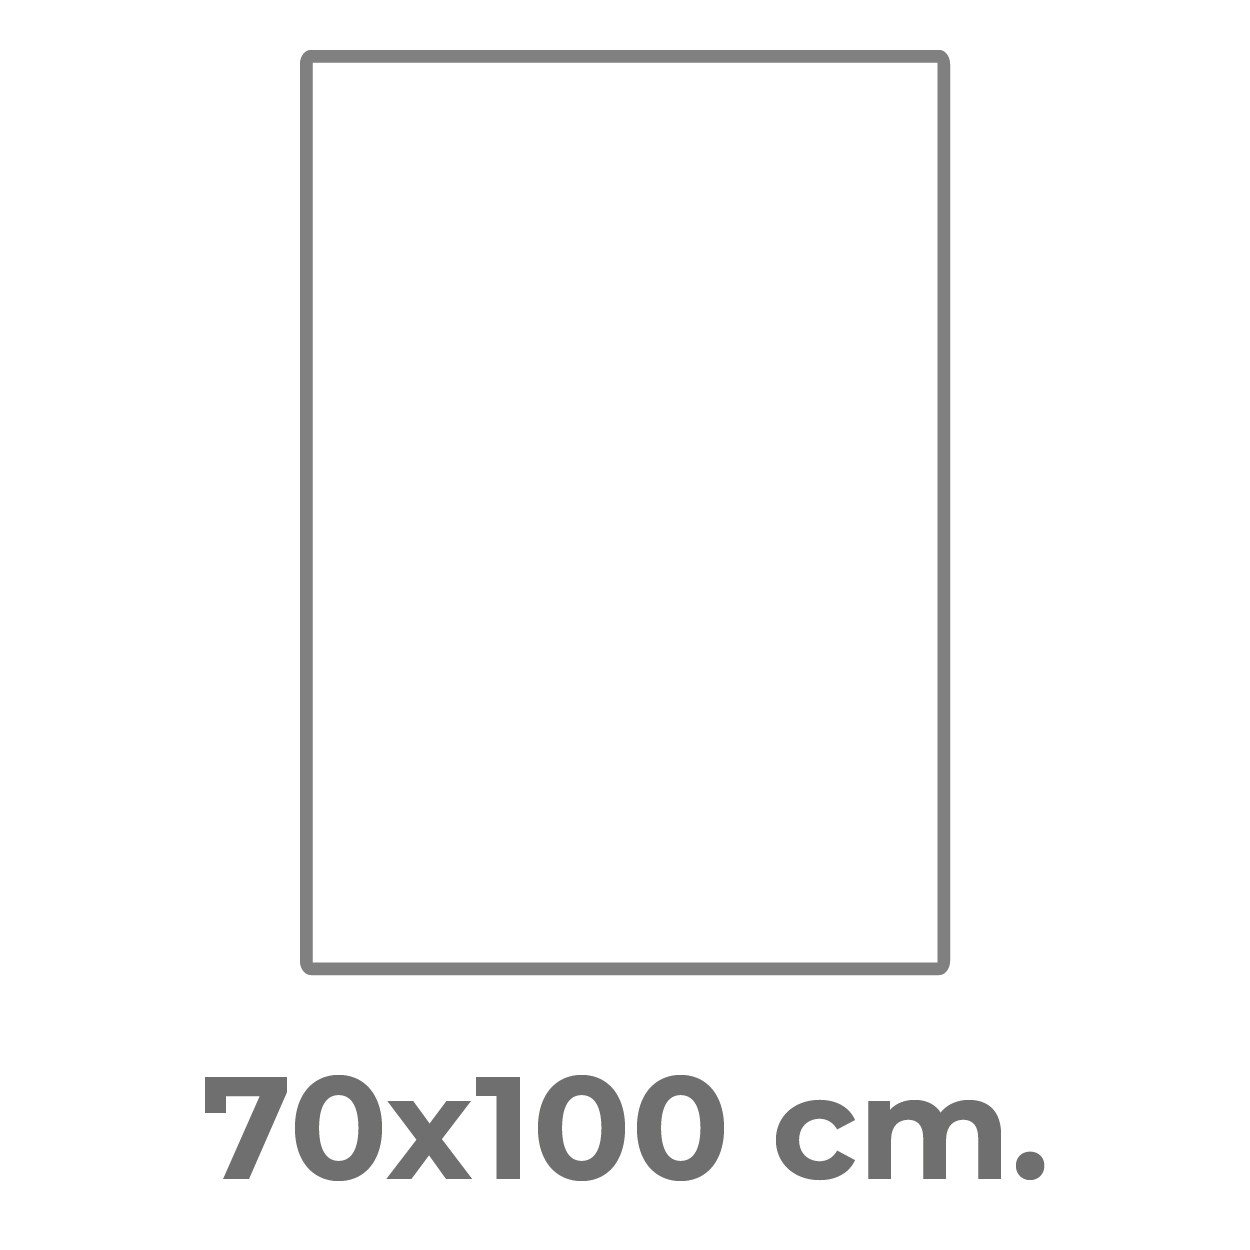 70x100cm